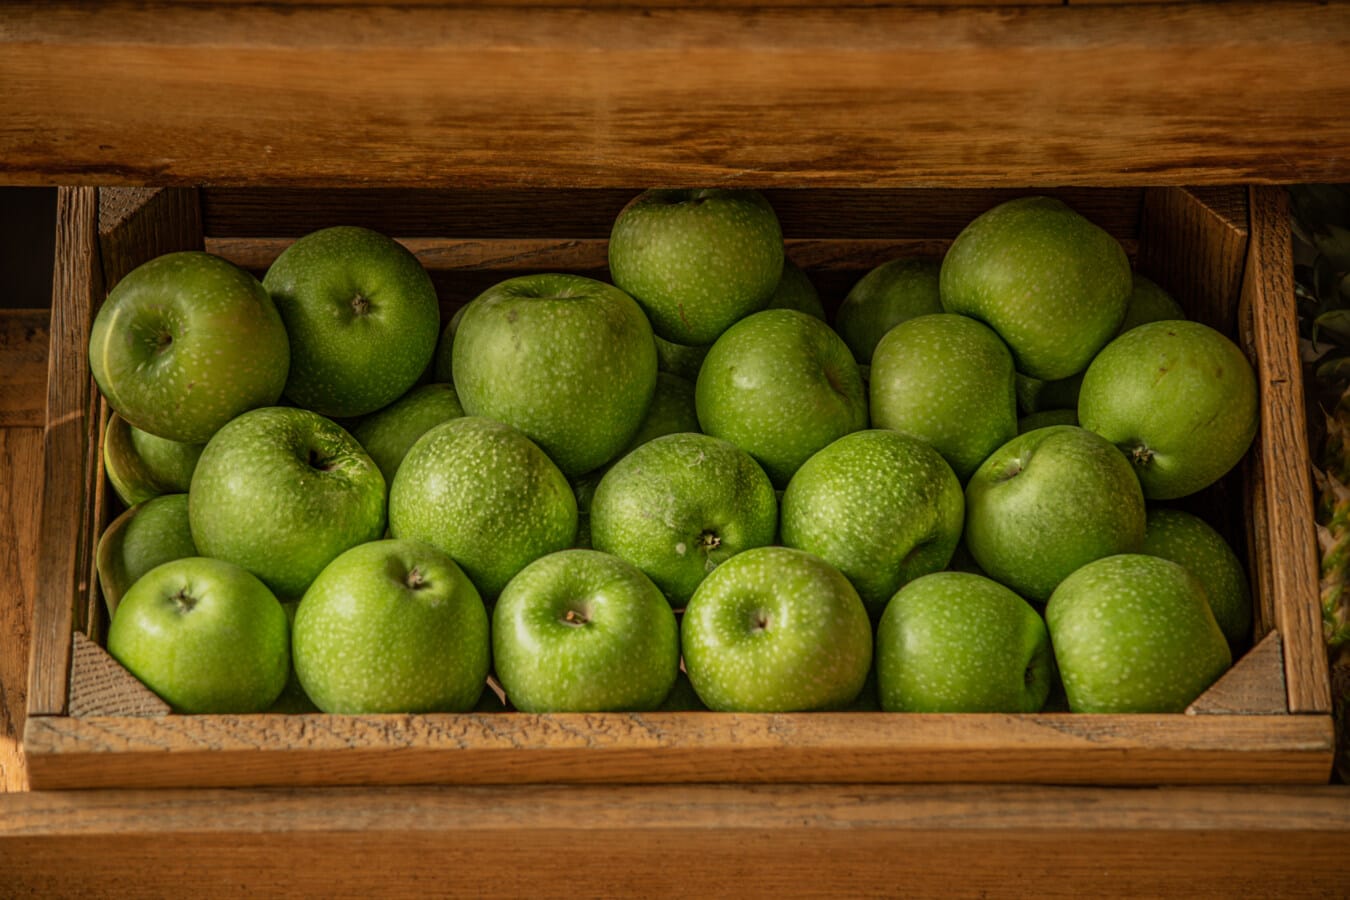 成熟的果子, 深绿色, 苹果, 黄绿色, 市场, 有机, 框, 木, 新鲜, 水果